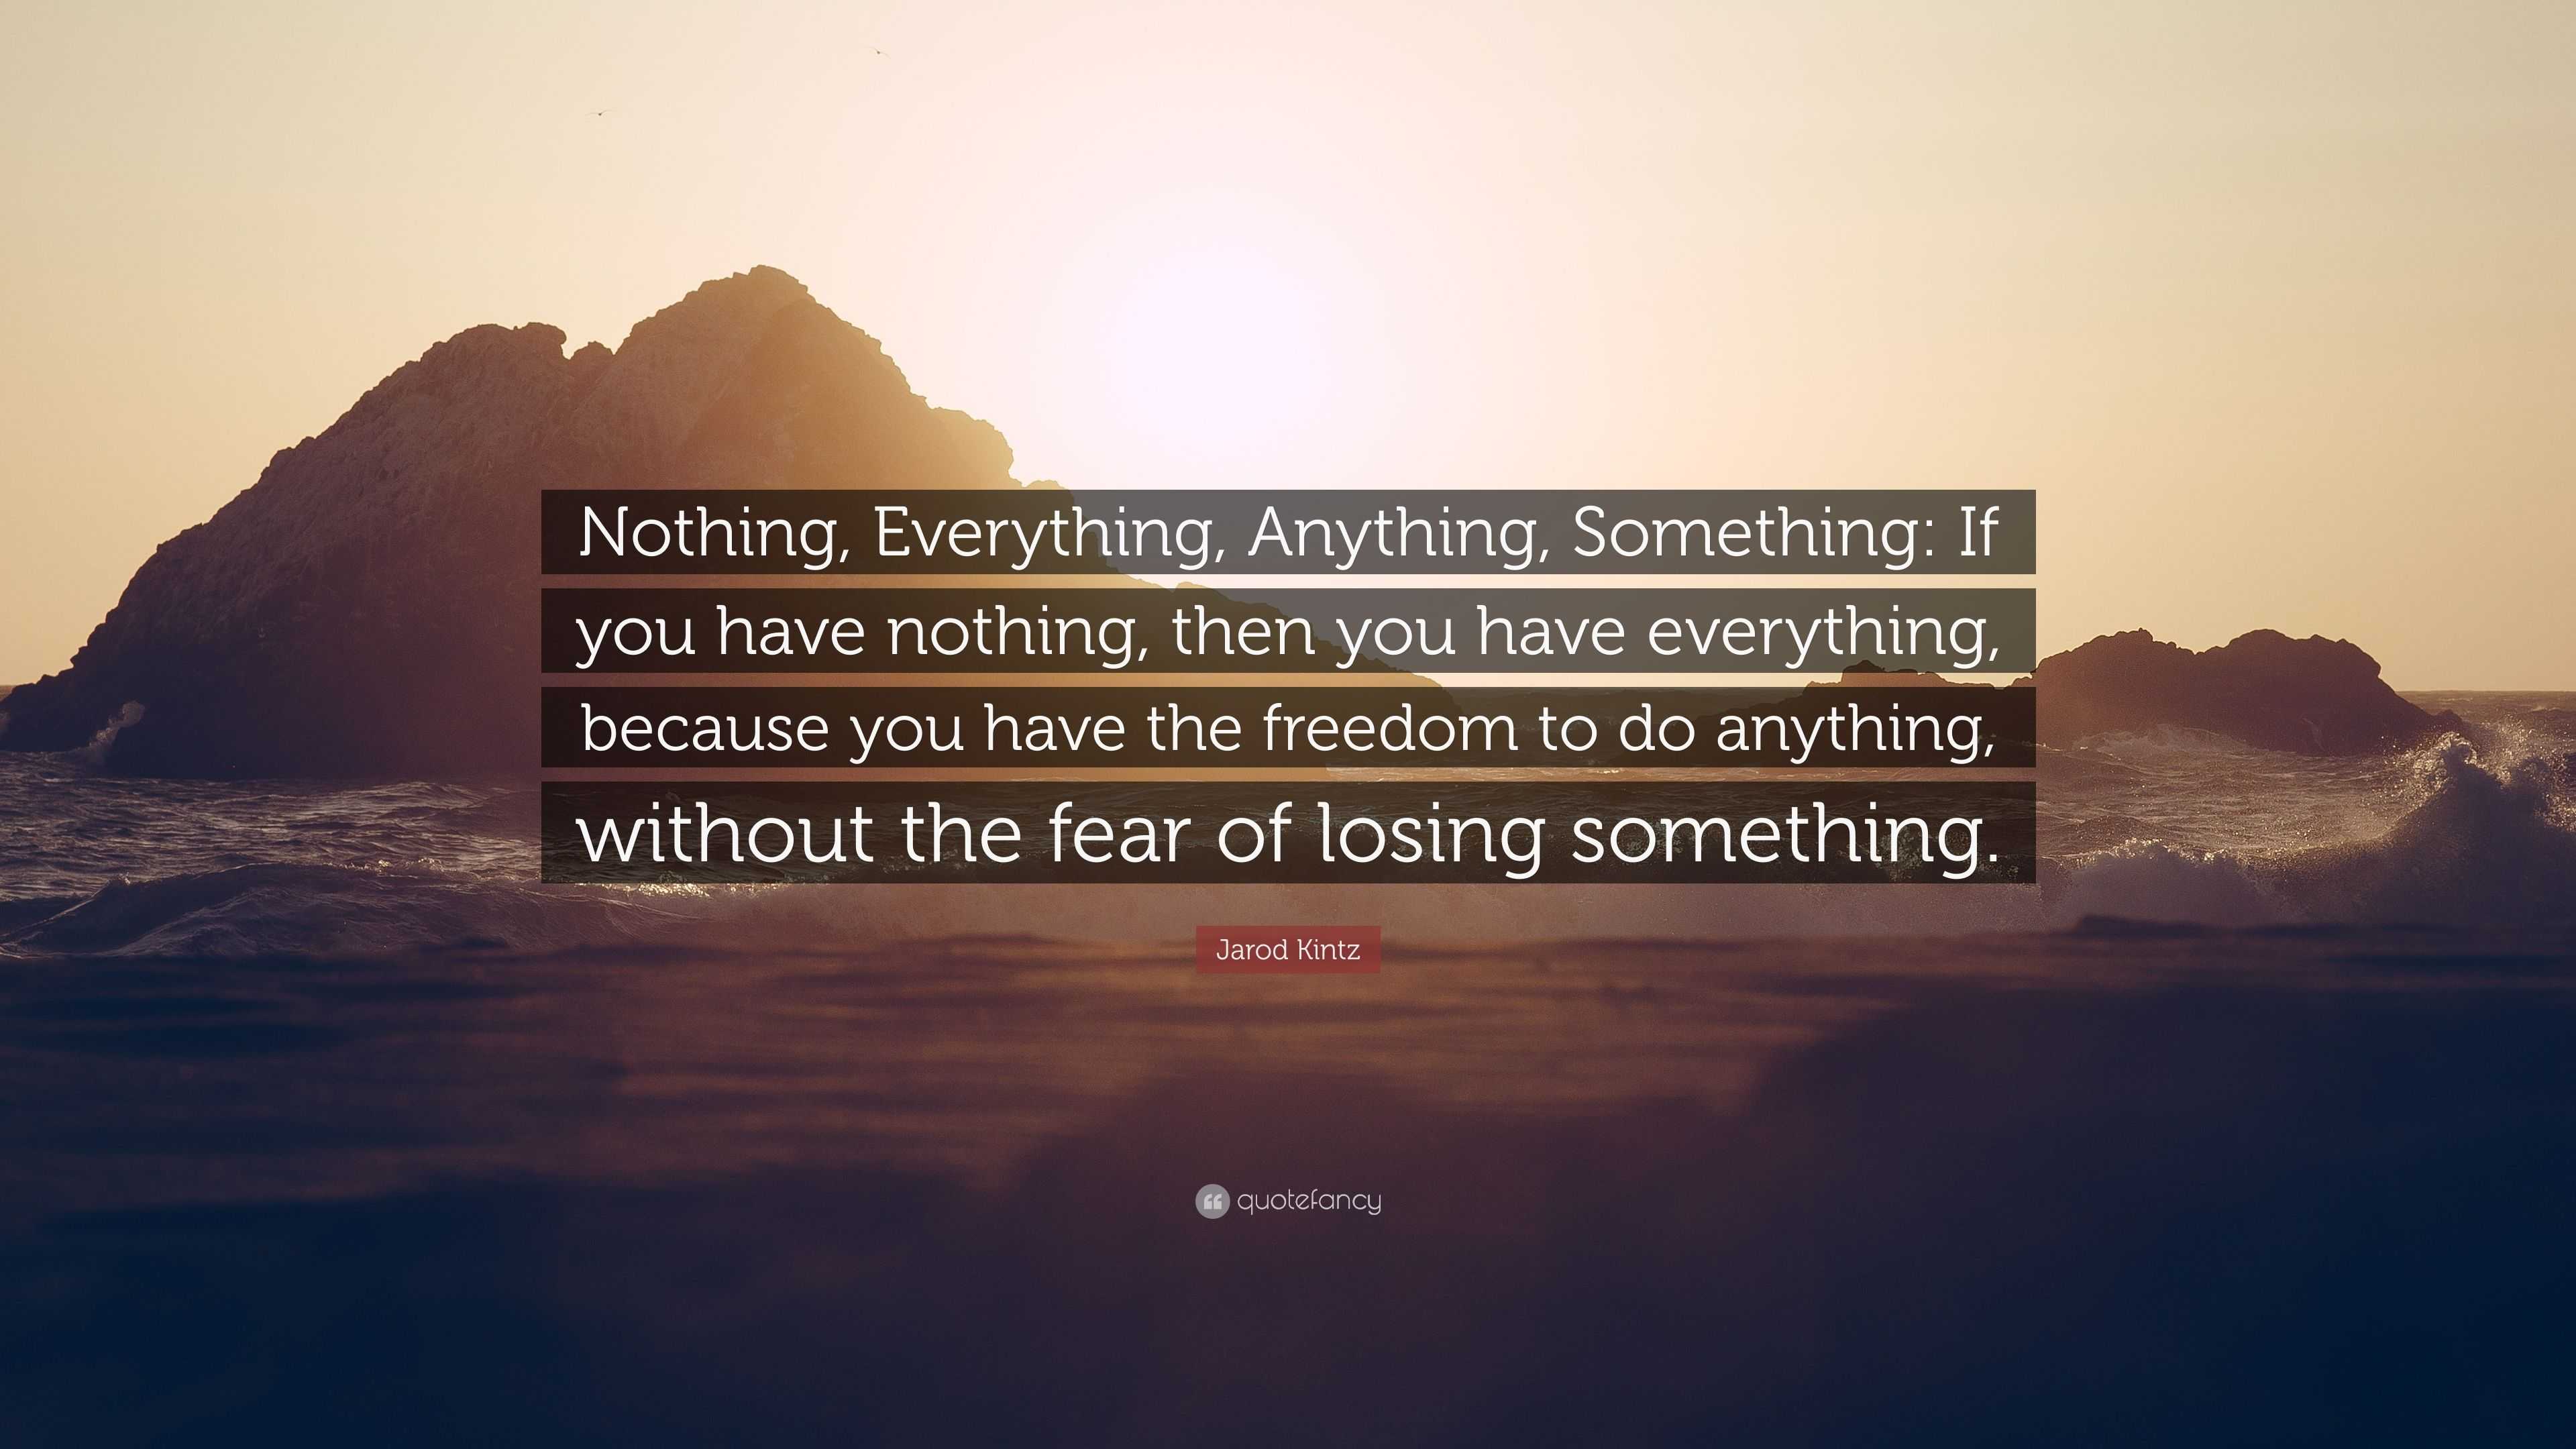 Jarod Kintz Quote: “Nothing, Everything, Anything, Something: If you ...